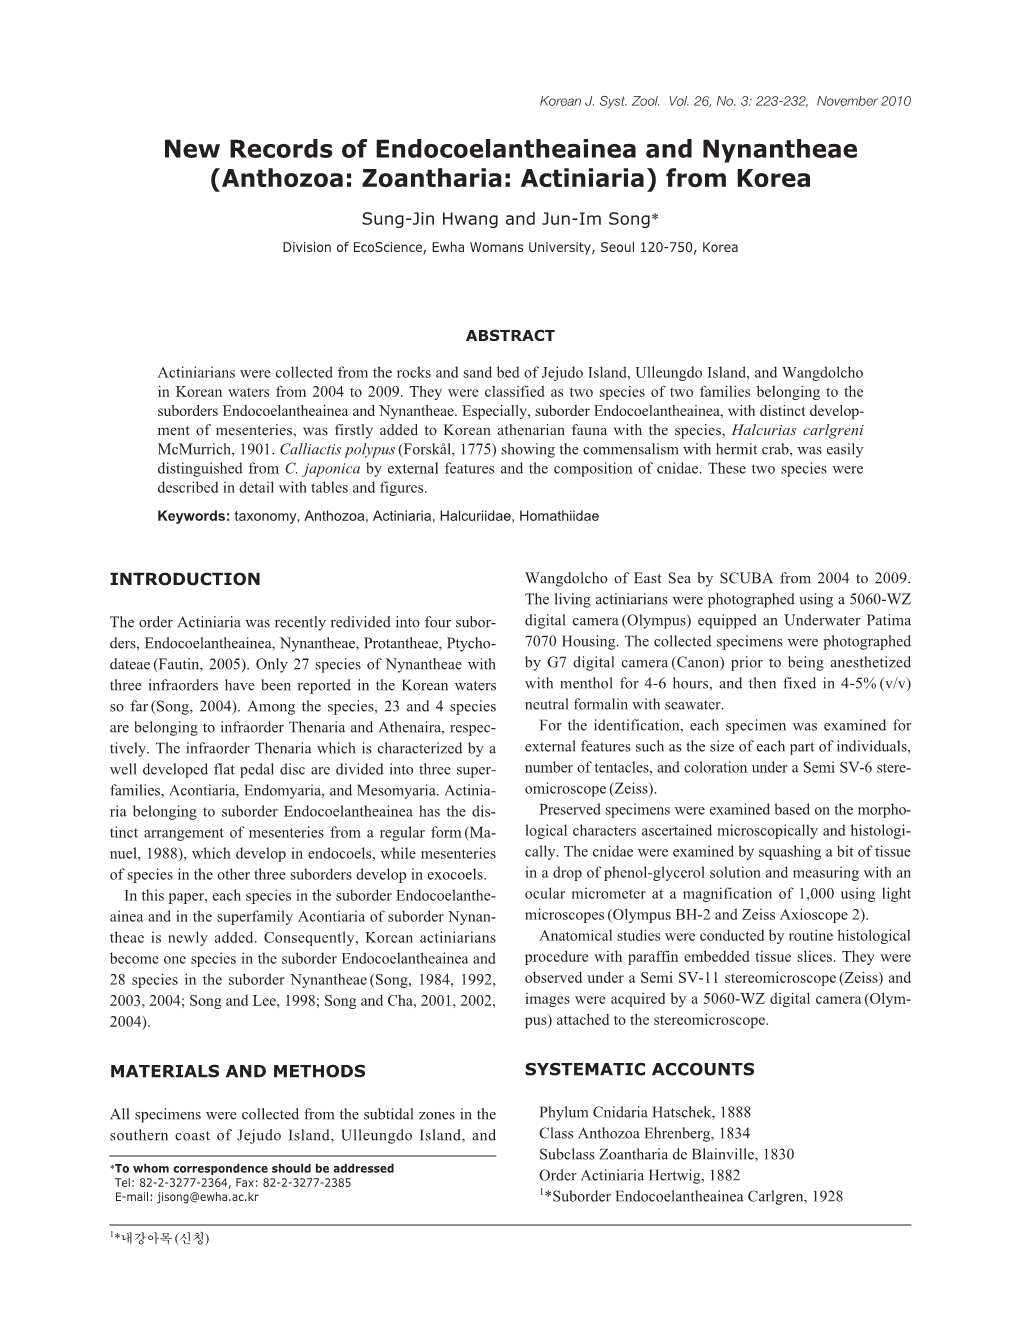 Anthozoa: Zoantharia: Actiniaria) from Korea